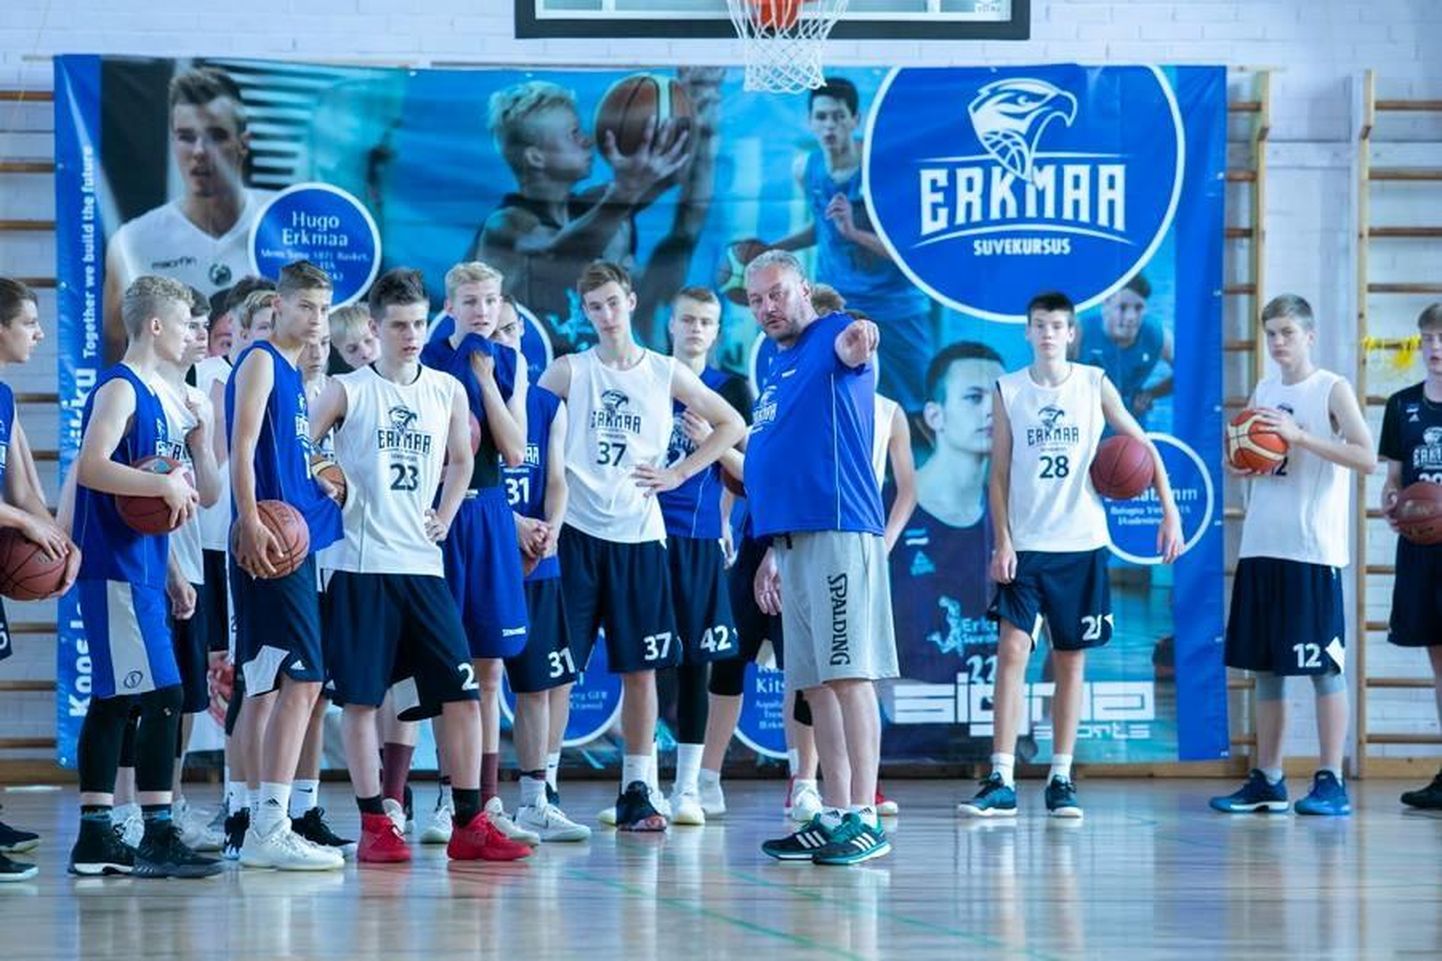 Mullu jagas Erkmaa Suvekursusel osalenud noorkorvpalluritele näpunäiteid teiste seas Tartu Ülikooli meeskonna peatreener Priit Vene (keskel). Juhendajate valik on korralik ka sellel aastal.